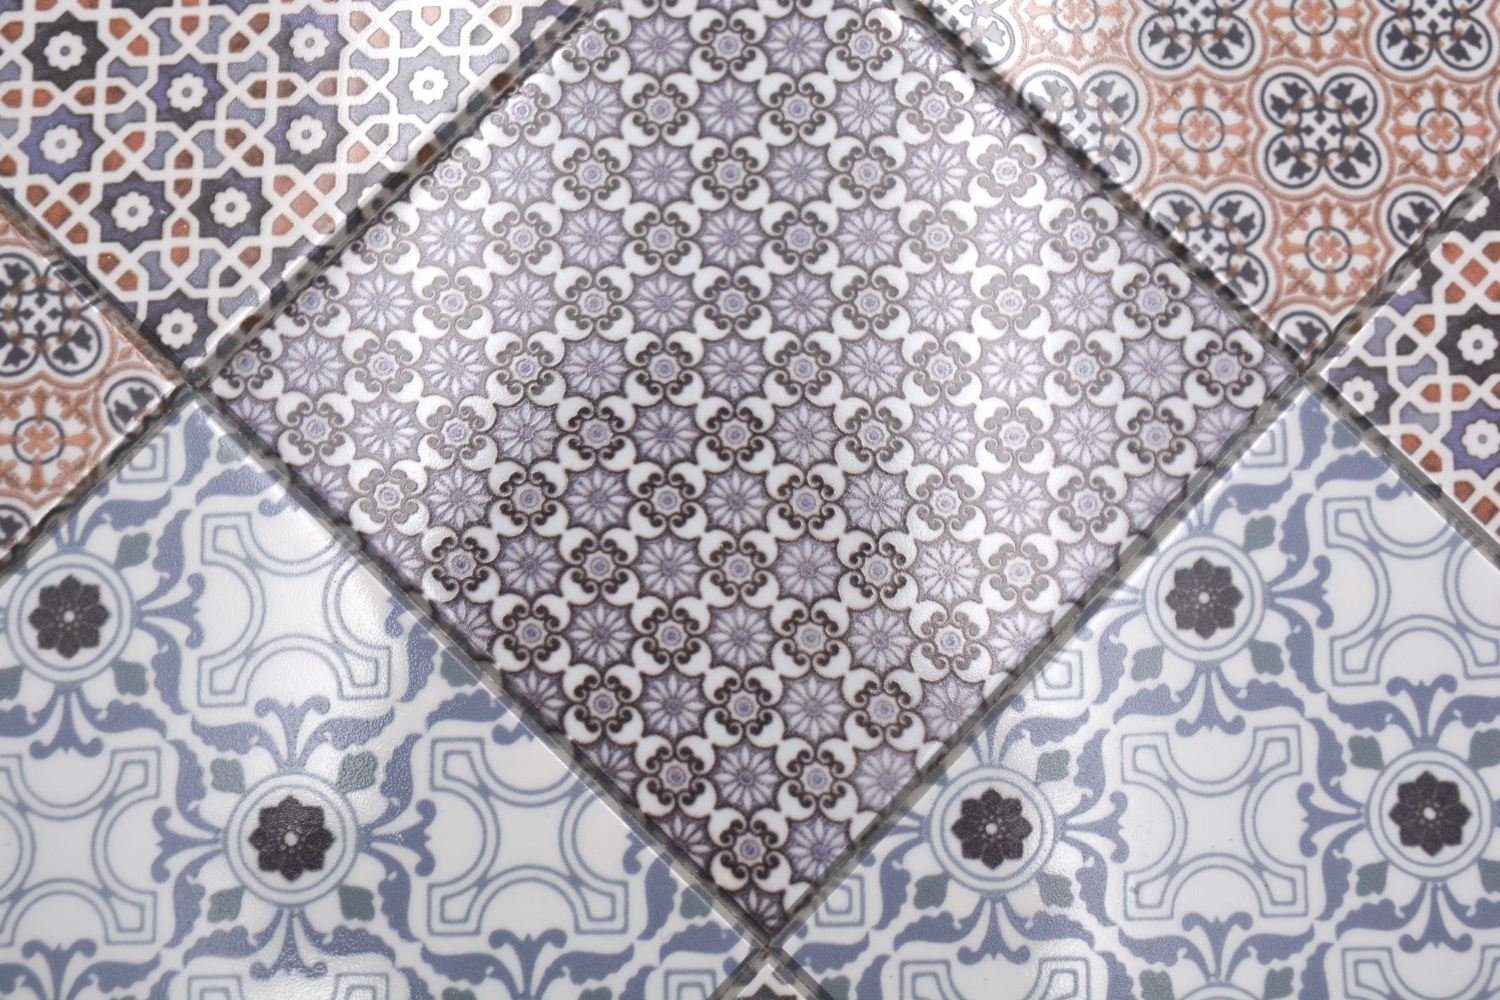 Mosani Mosaikfliesen Retro Vintage Mosaik weiß orange grau Küche blau Fliesenspiegel